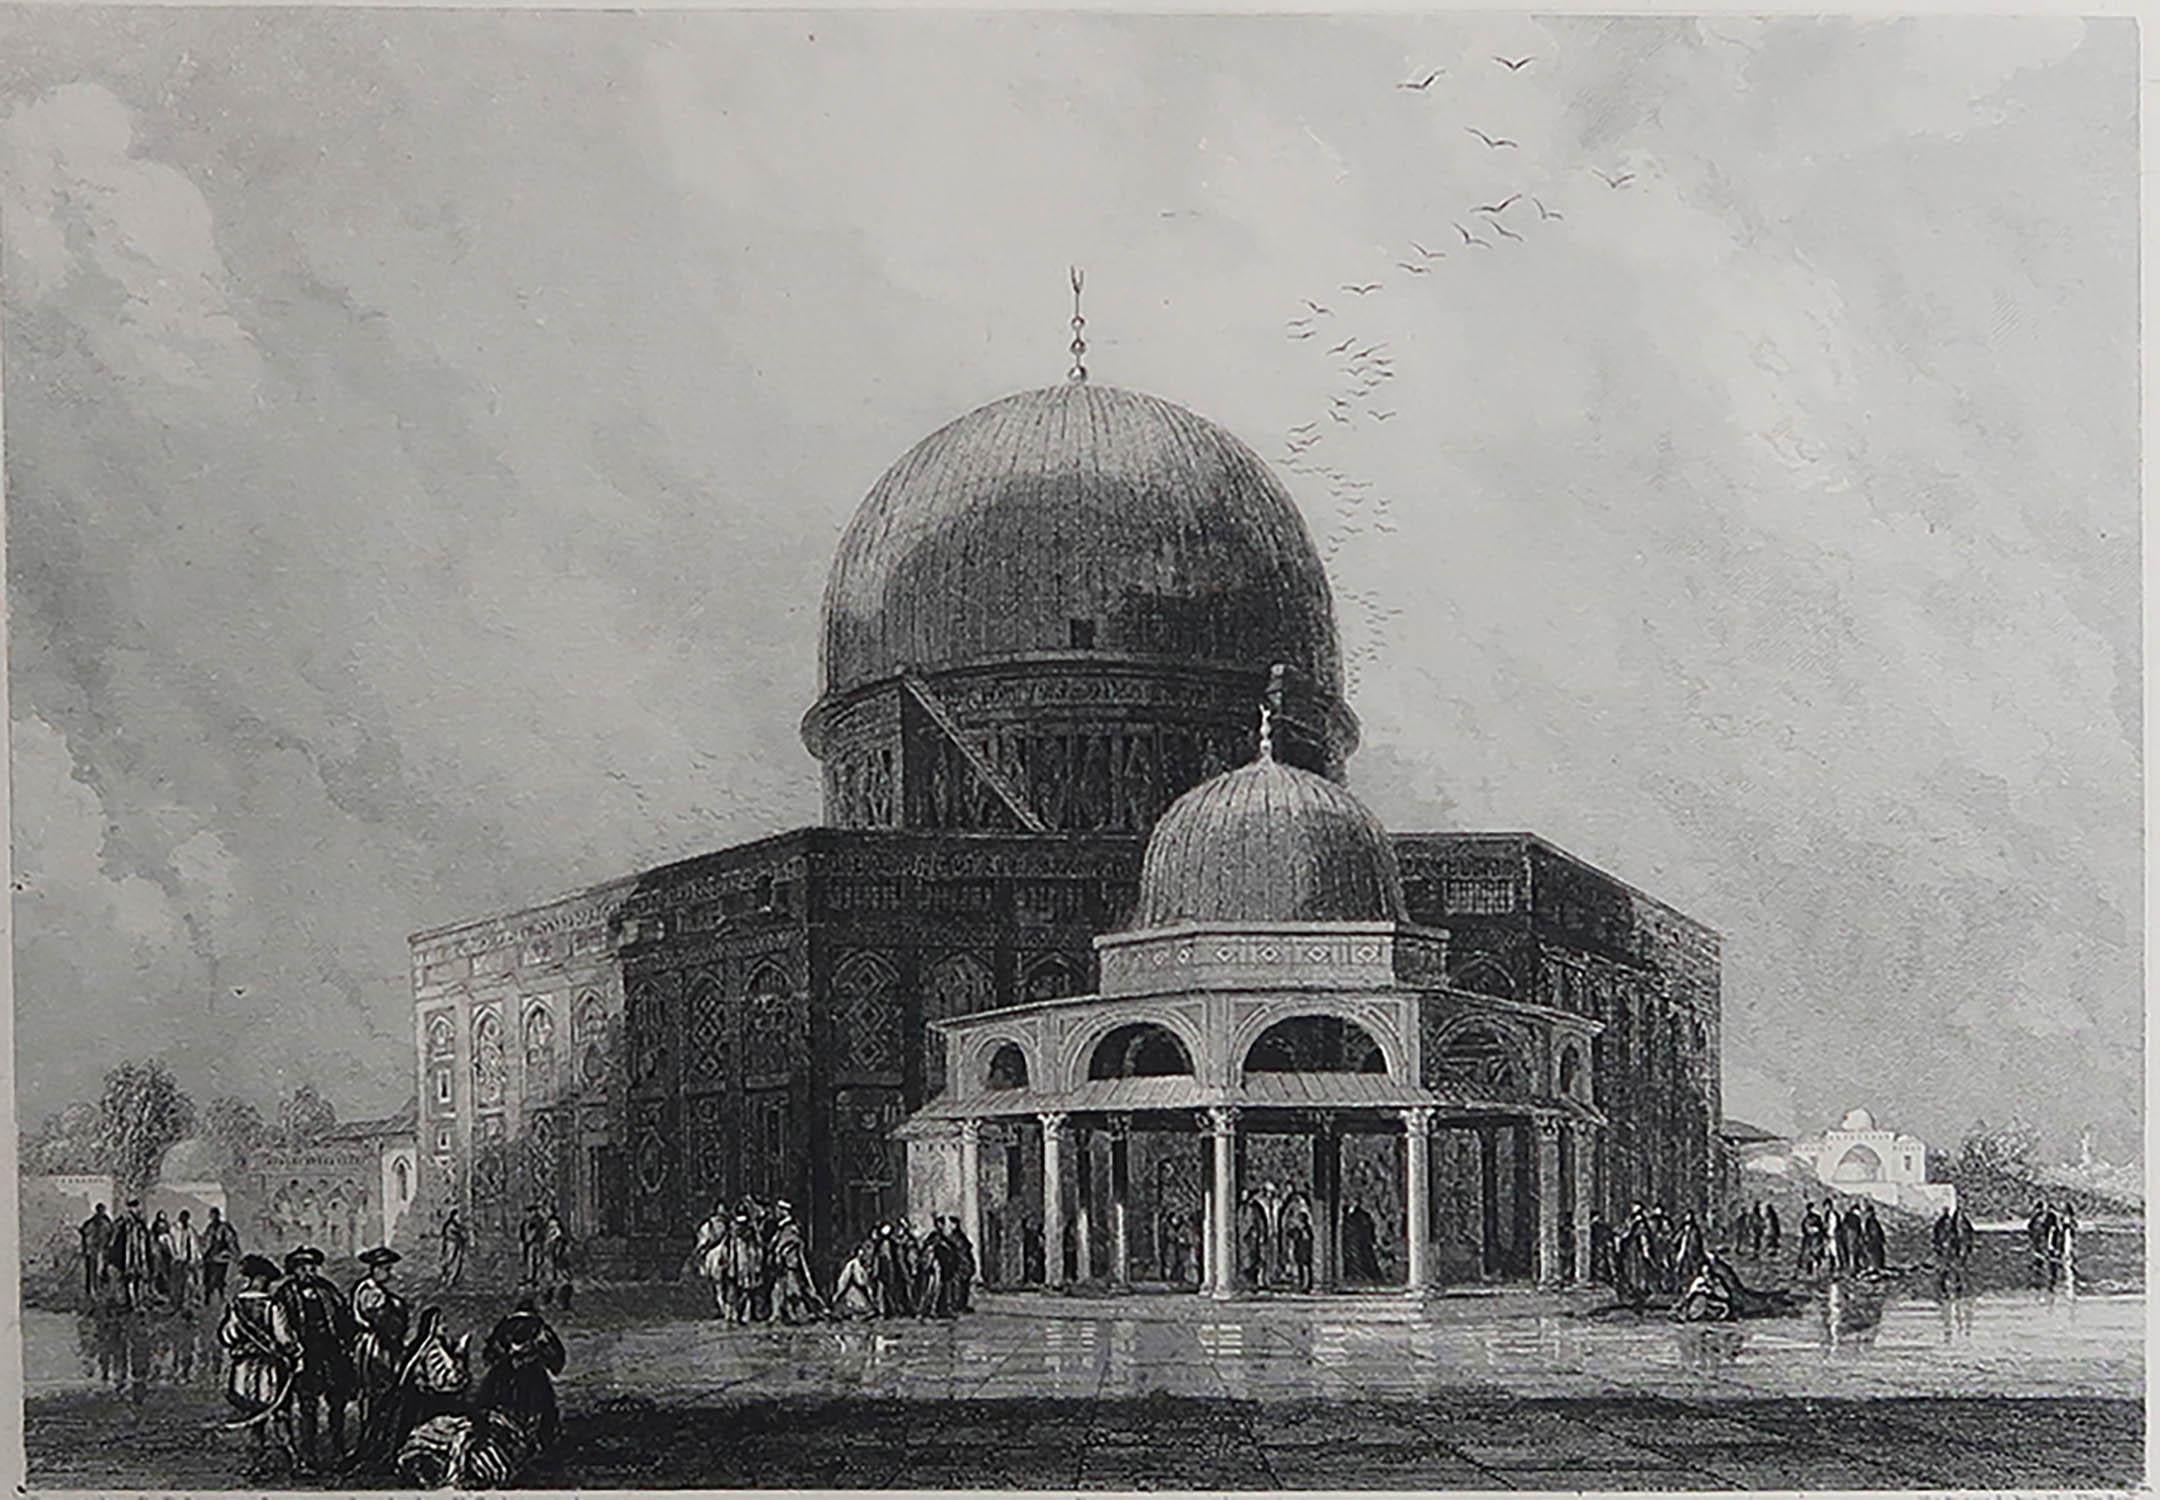 Wunderschönes Bild der Moschee von Omar

Feiner Stahlstich nach David Roberts

Veröffentlicht C.1850

Das Maß ist die Papiergröße

Ungerahmt.

